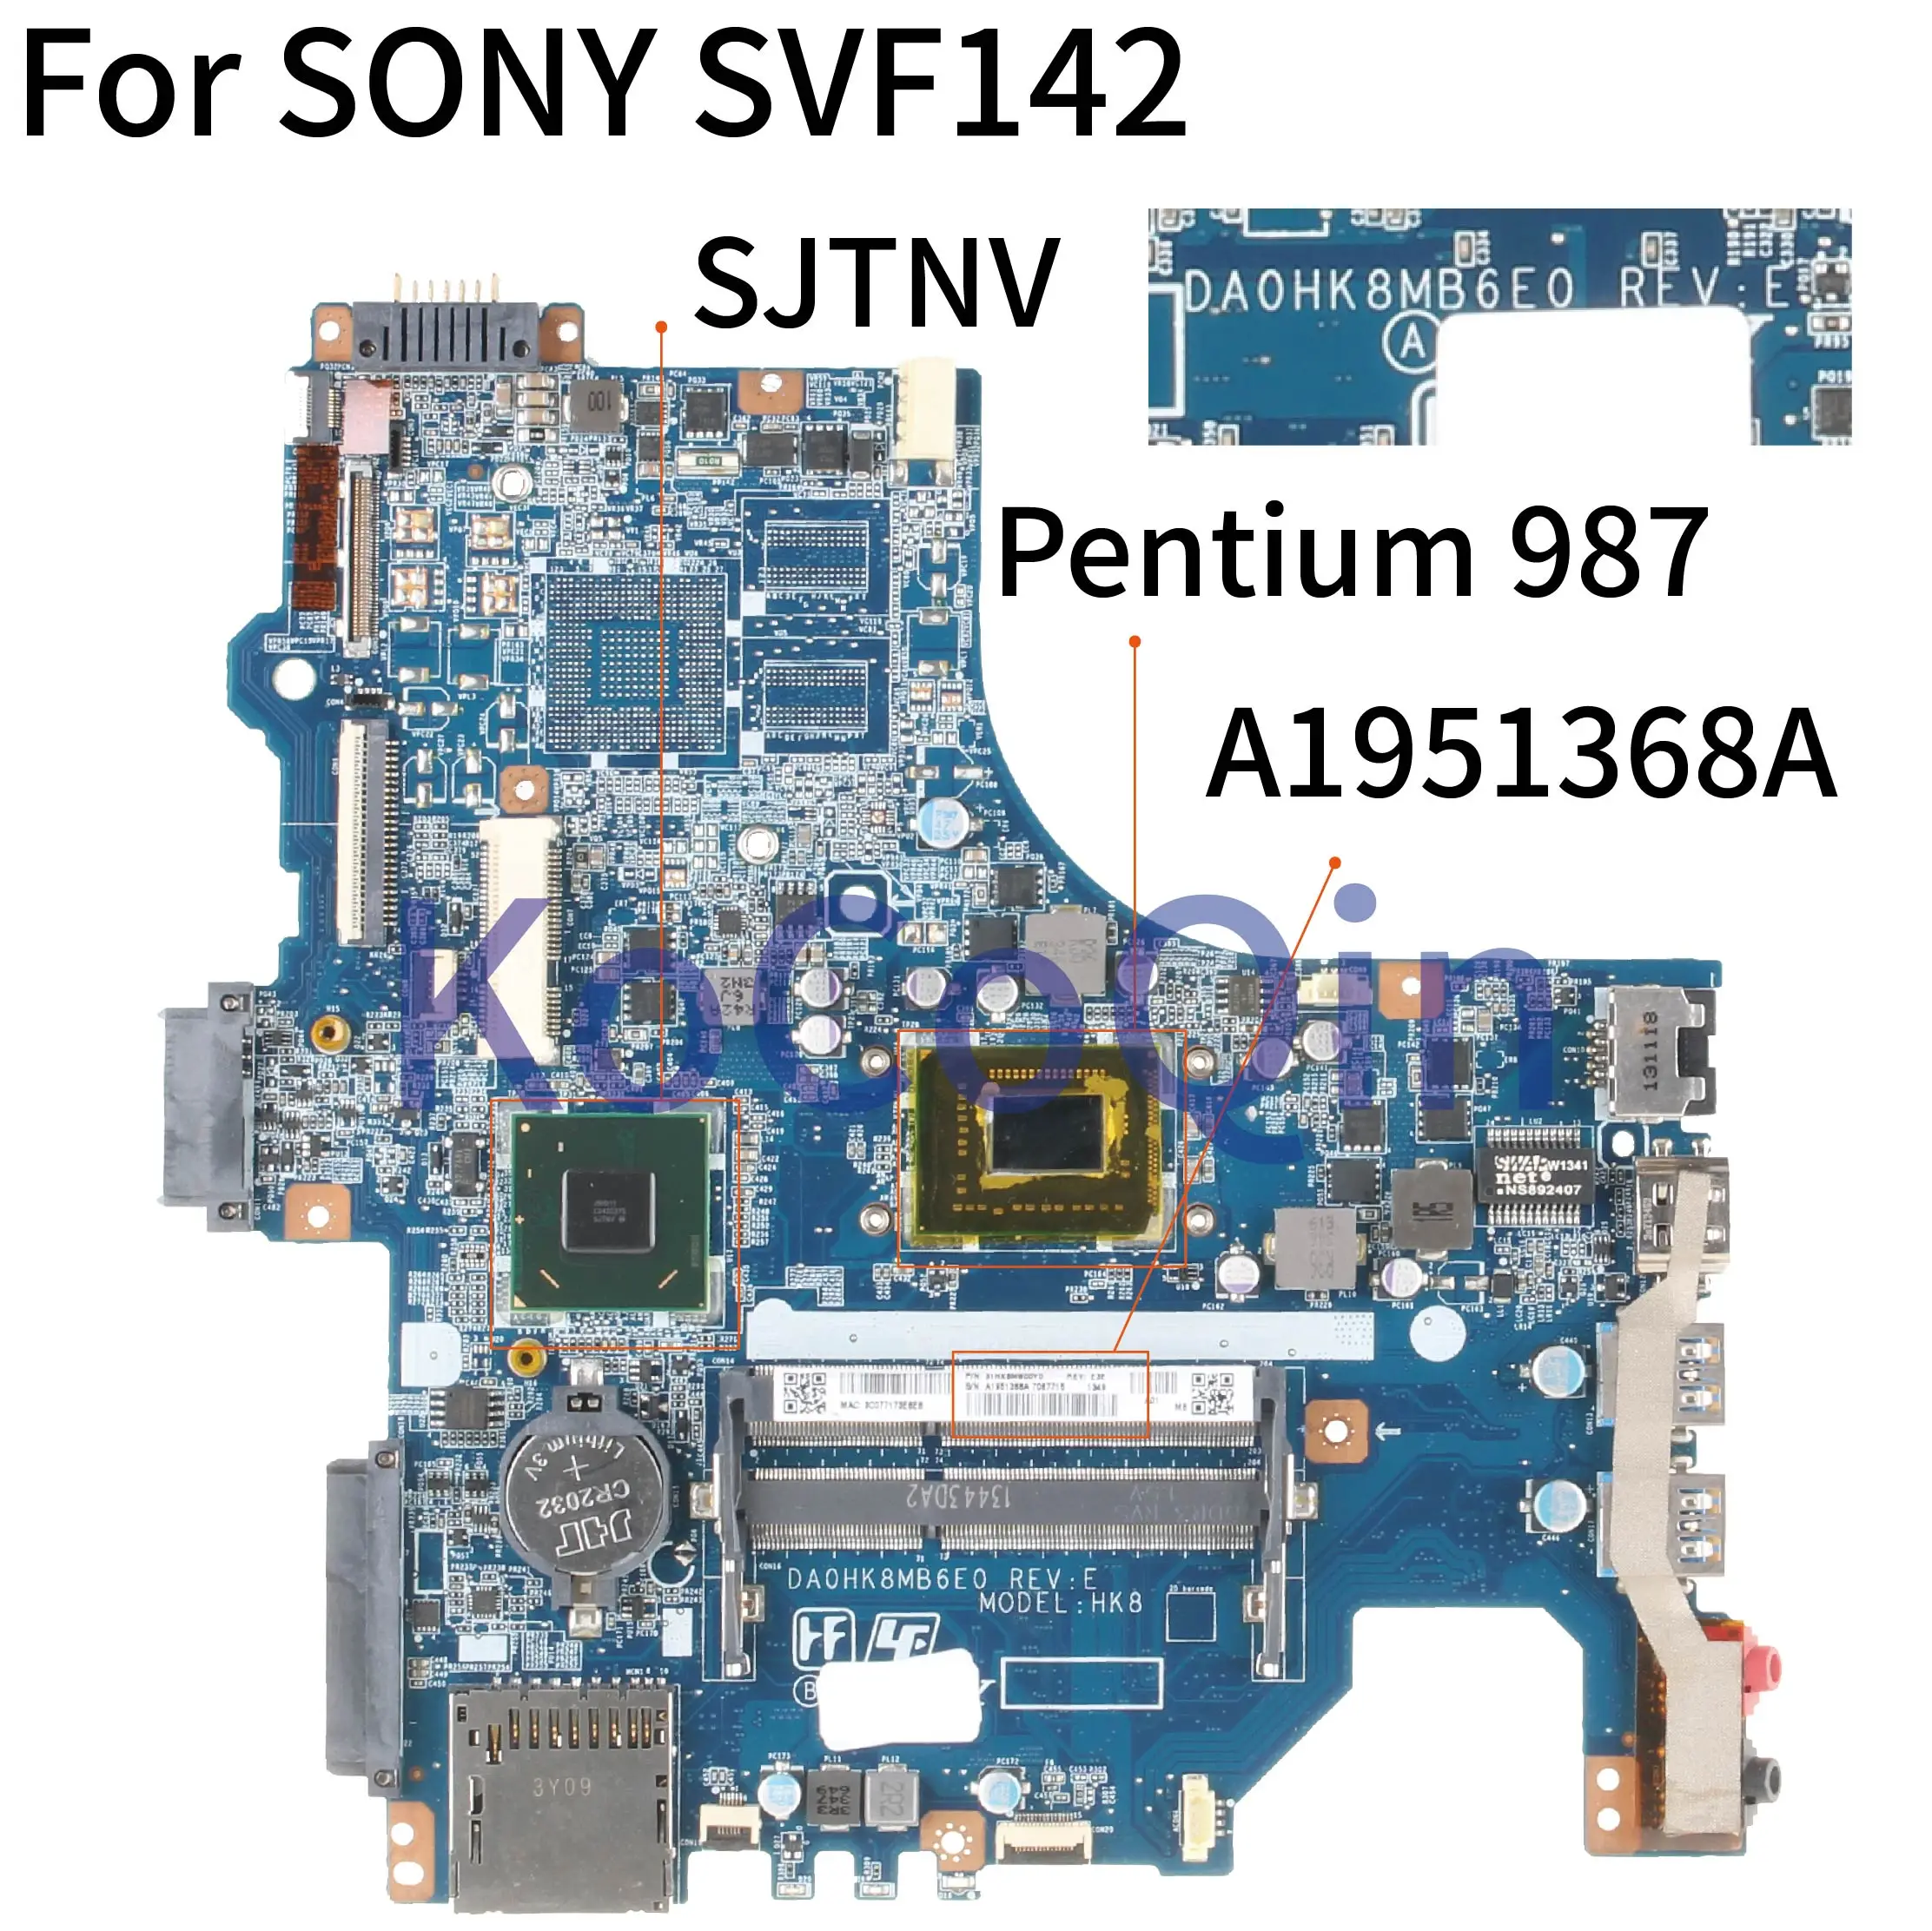   KoCoQin   SONY SVF142 Core SR0V4 Pentium 987,   A1951368A DA0HK8MB6E0 HK8 SJTNV